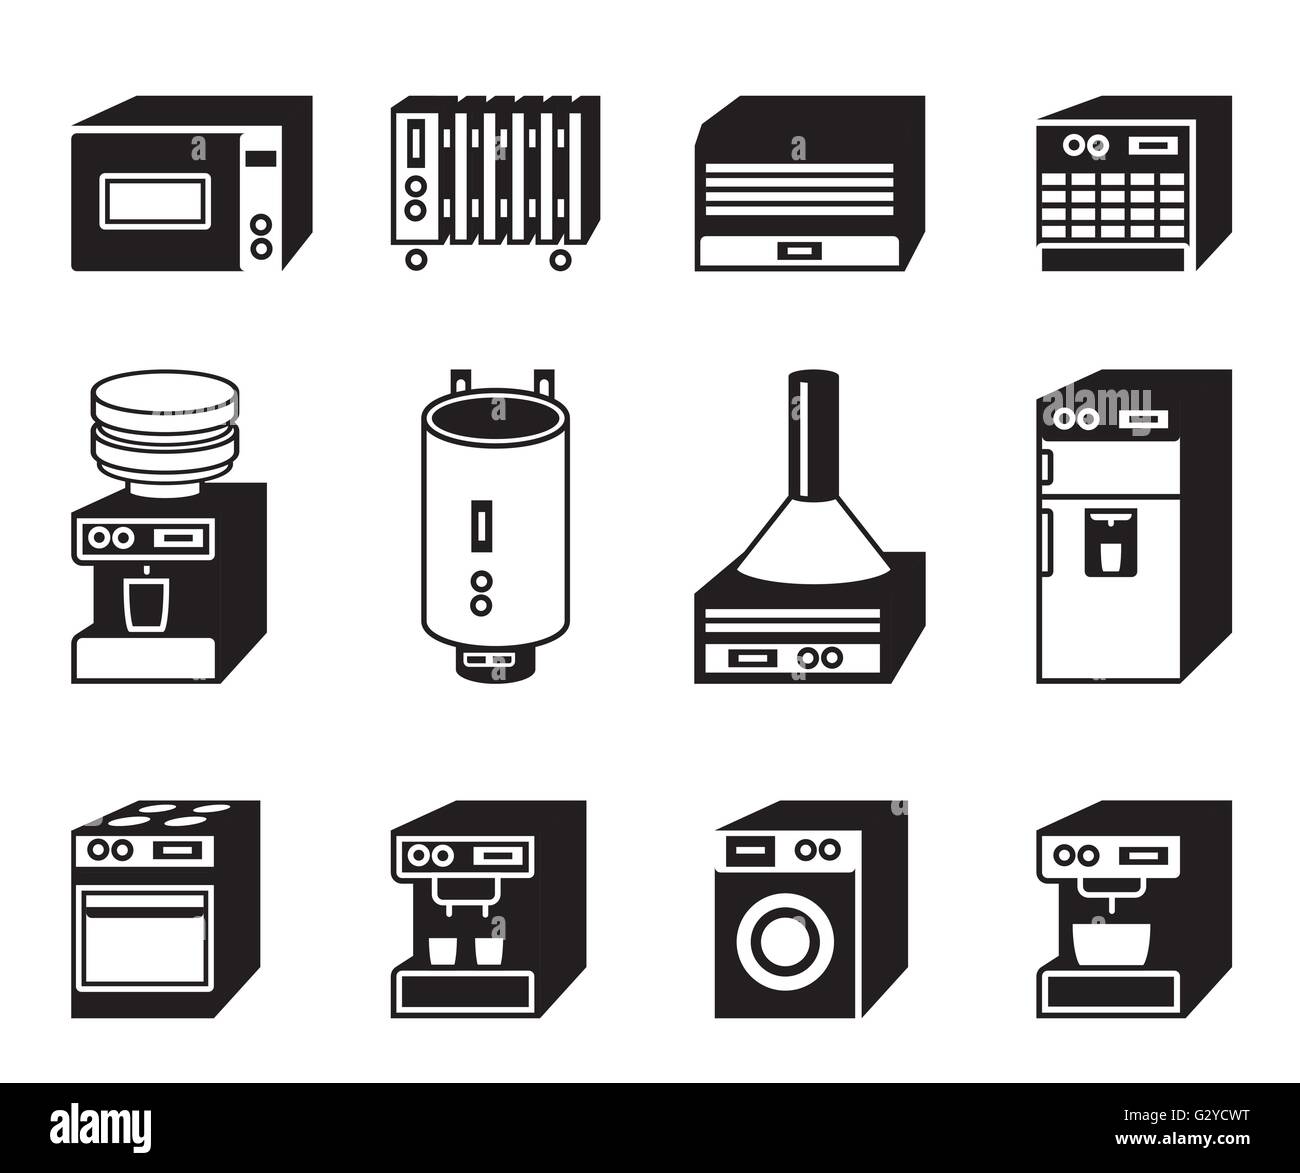 Haushaltsgeräte, Staubsauger, Bügeleisen und Kaffeemaschine. Kühlschrank,  Mixer und Toaster elektronische Gadgets Vektor Illustration Set. Elektrisch  Stock-Vektorgrafik - Alamy